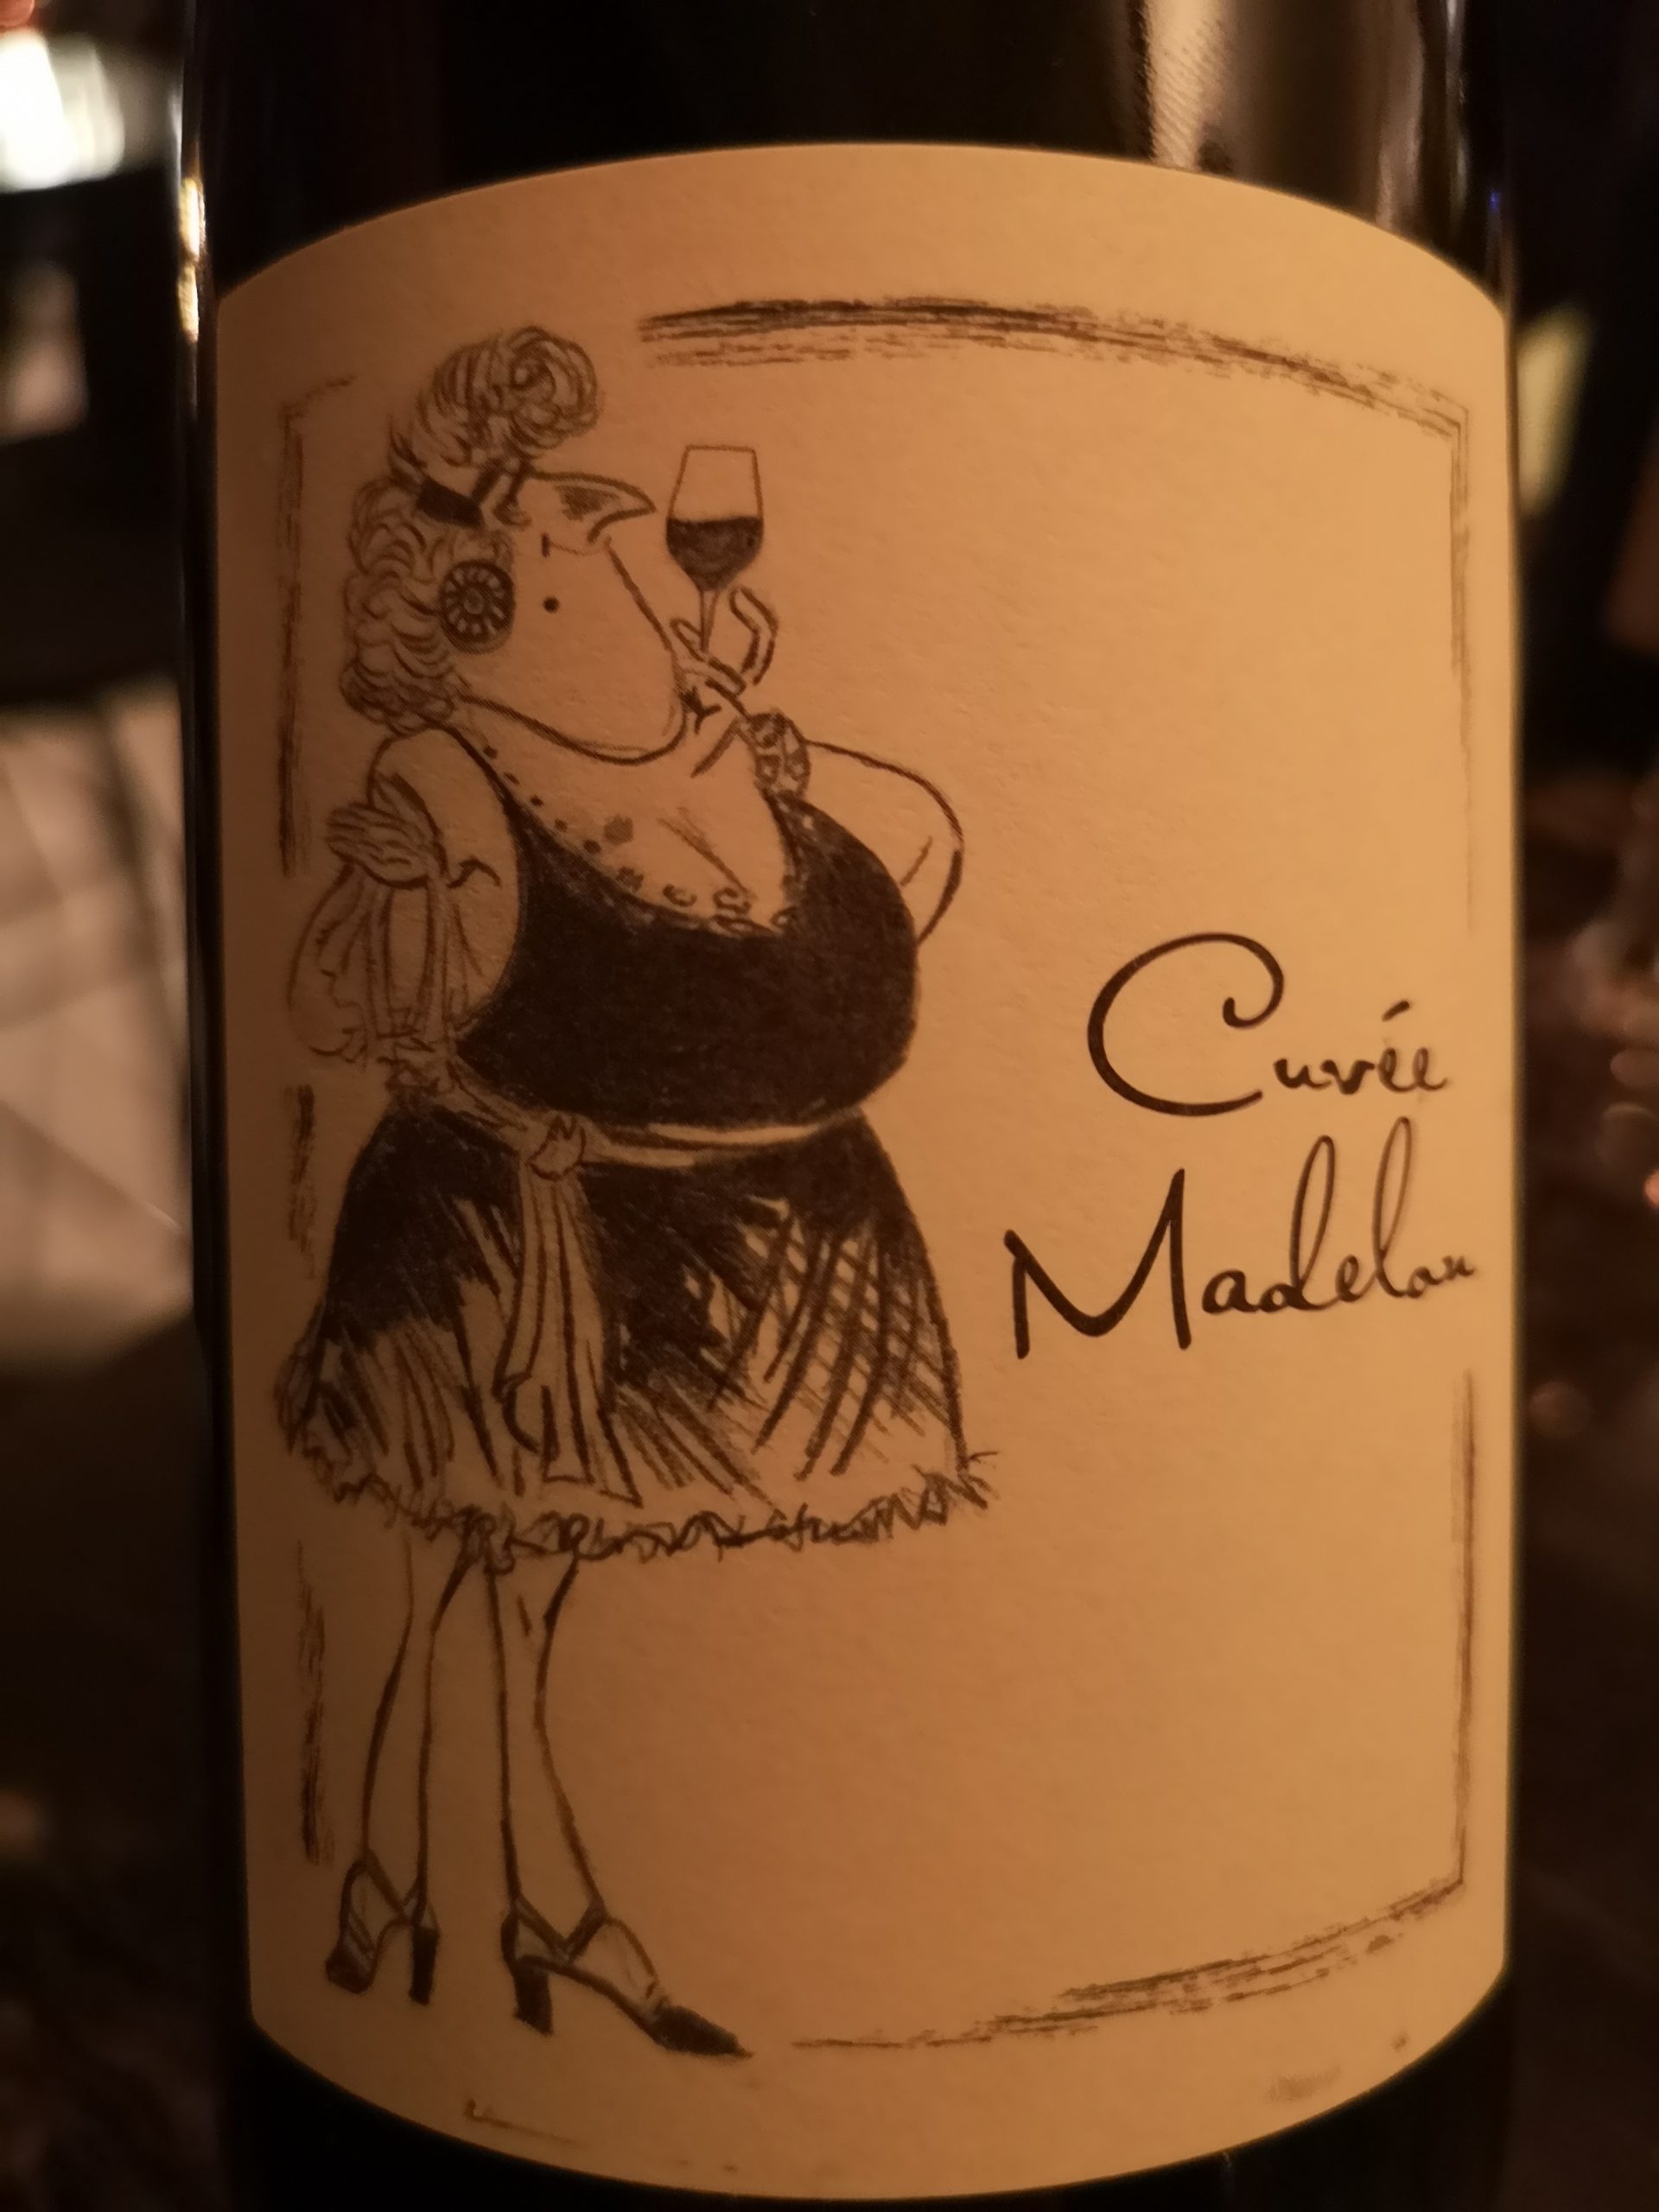 2019 Cuvée Madelon | Ganevat